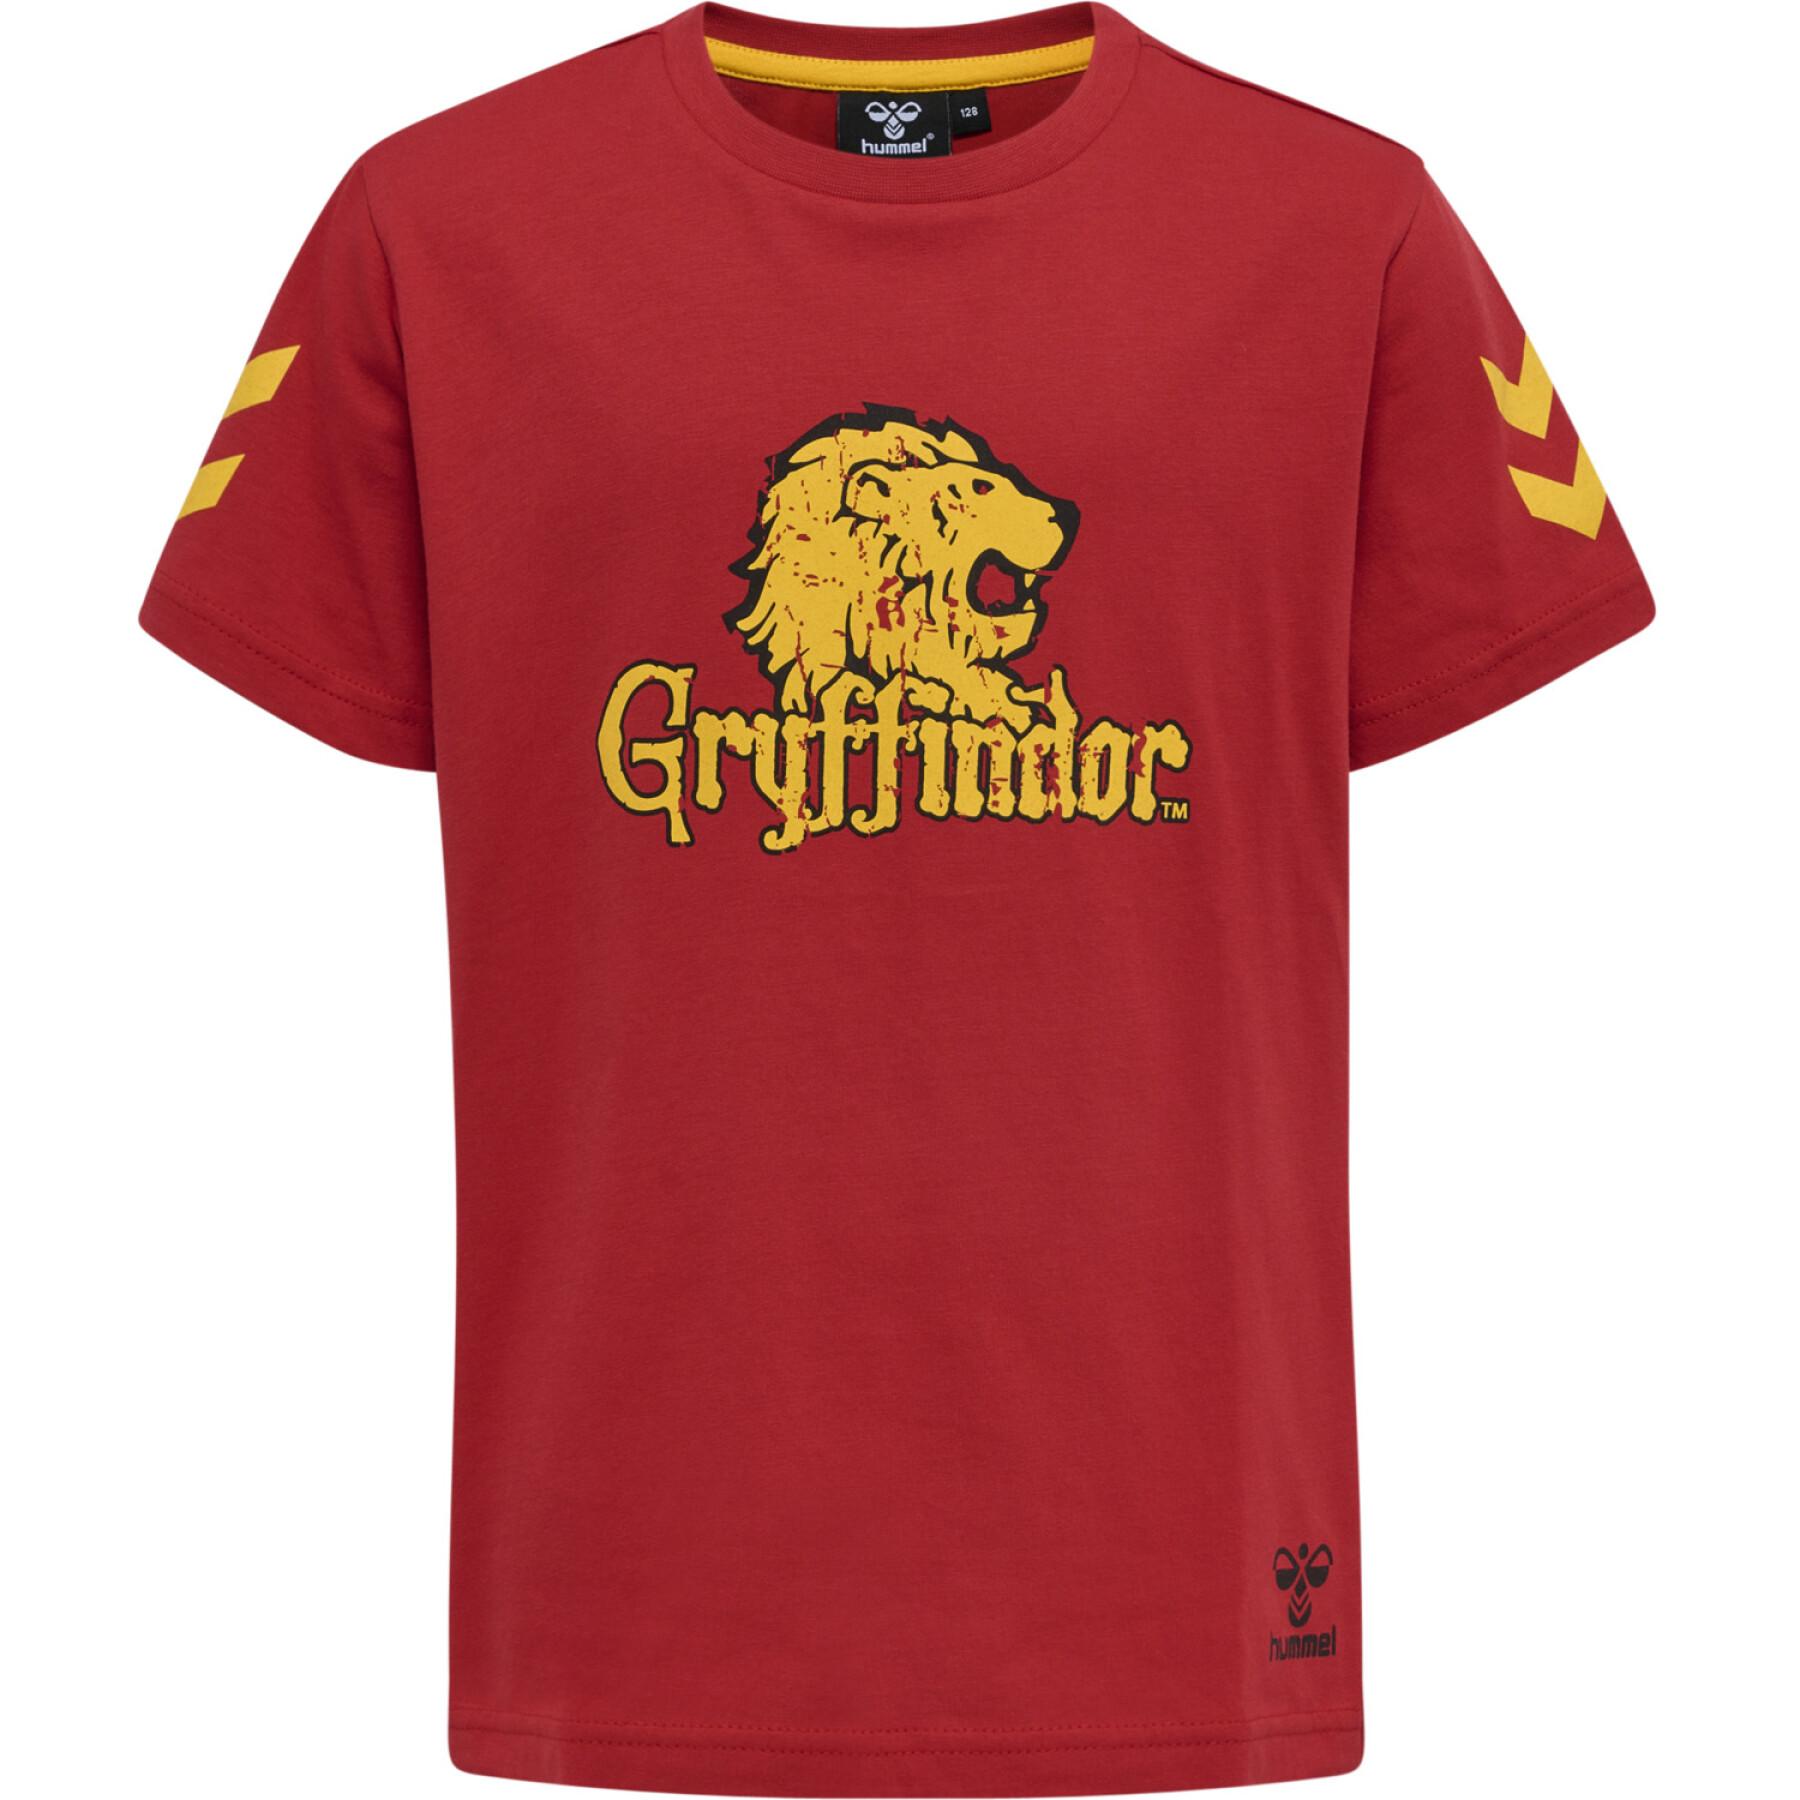 Kinder T-Shirt Hummel Harry Potter Tres